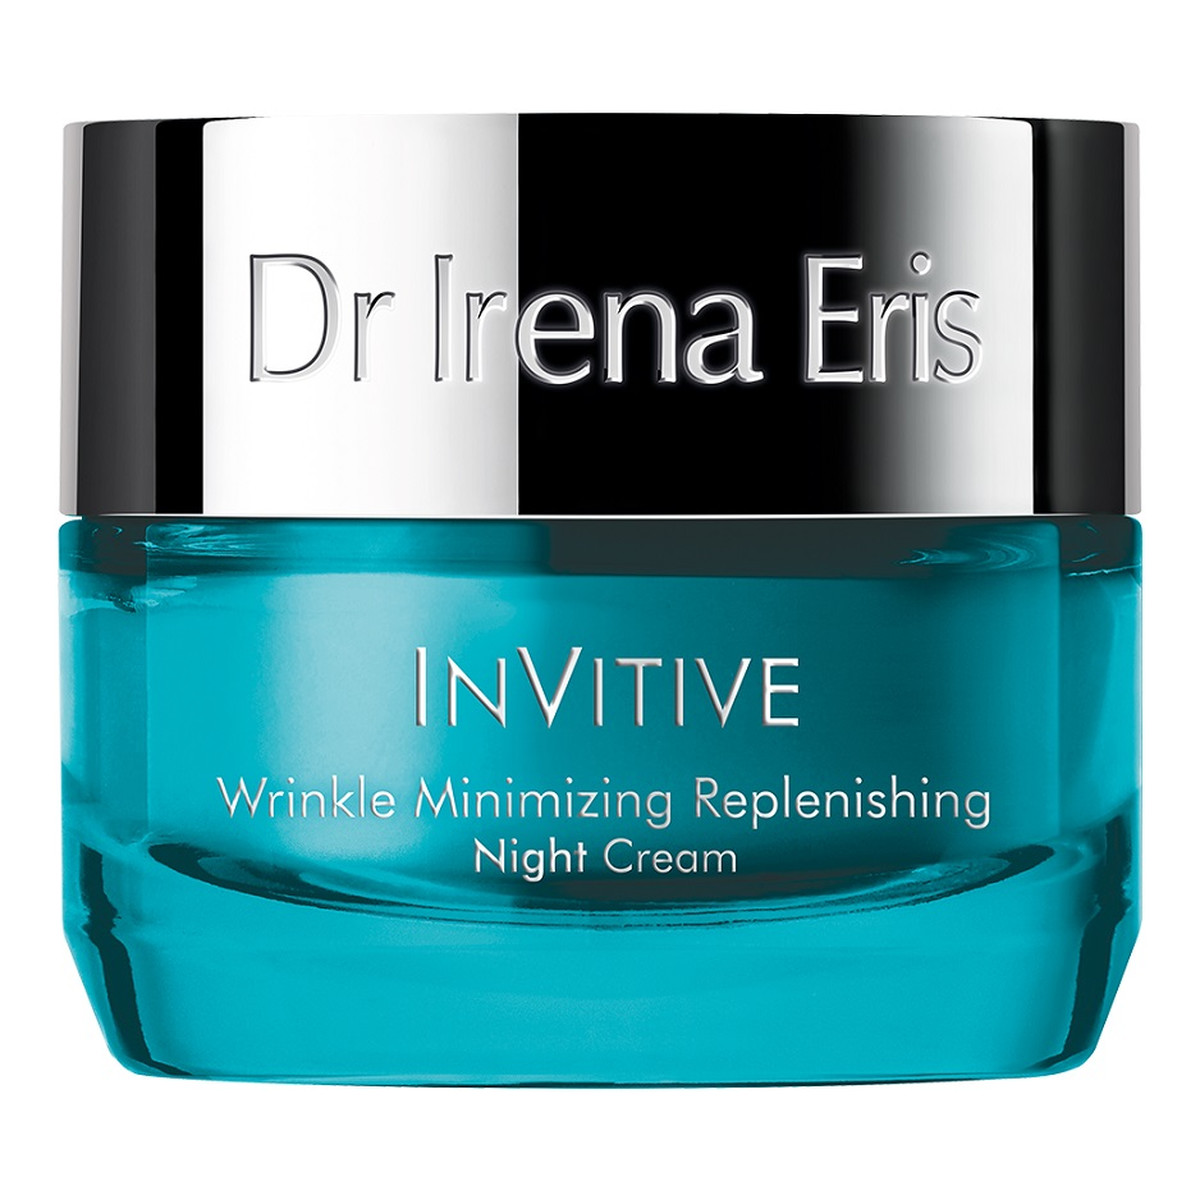 Dr Irena Eris InVitive Wrinkle Minimizing Replenishing przeciwzmarszczkowy krem odbudowujący na noc 50ml